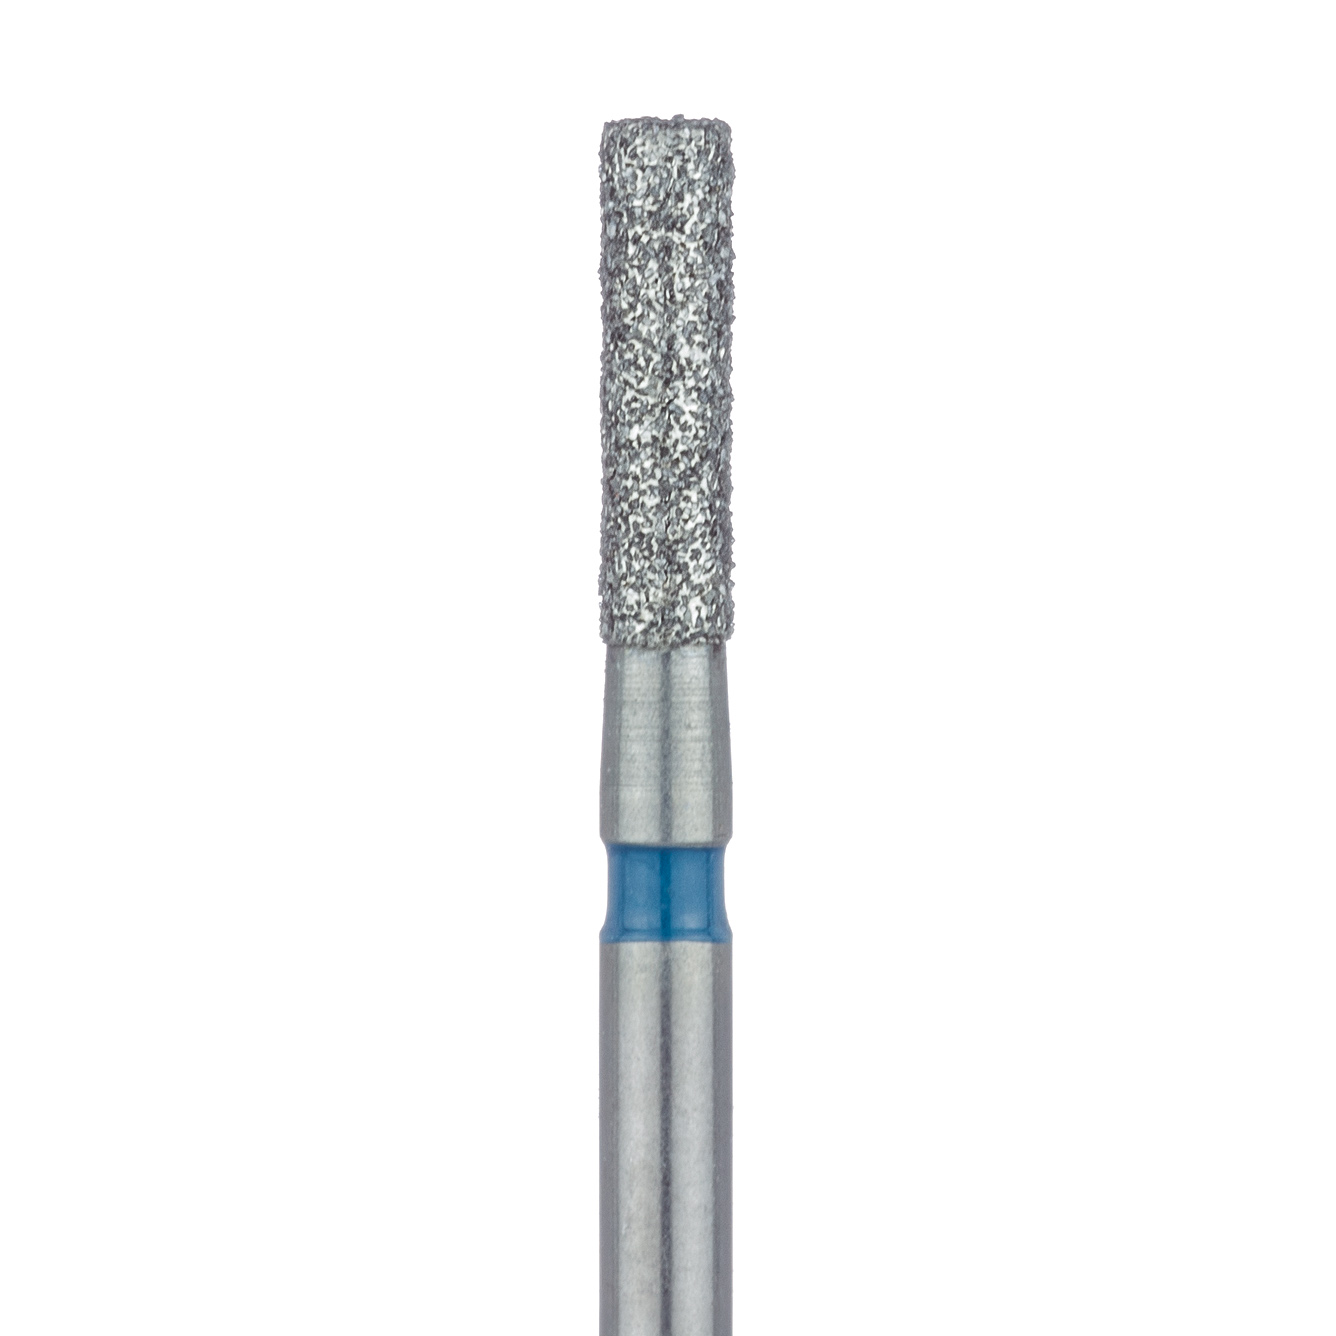 837-016-FG Long Cylinder Diamond Bur, 1.6mm Ø, Medium, FG